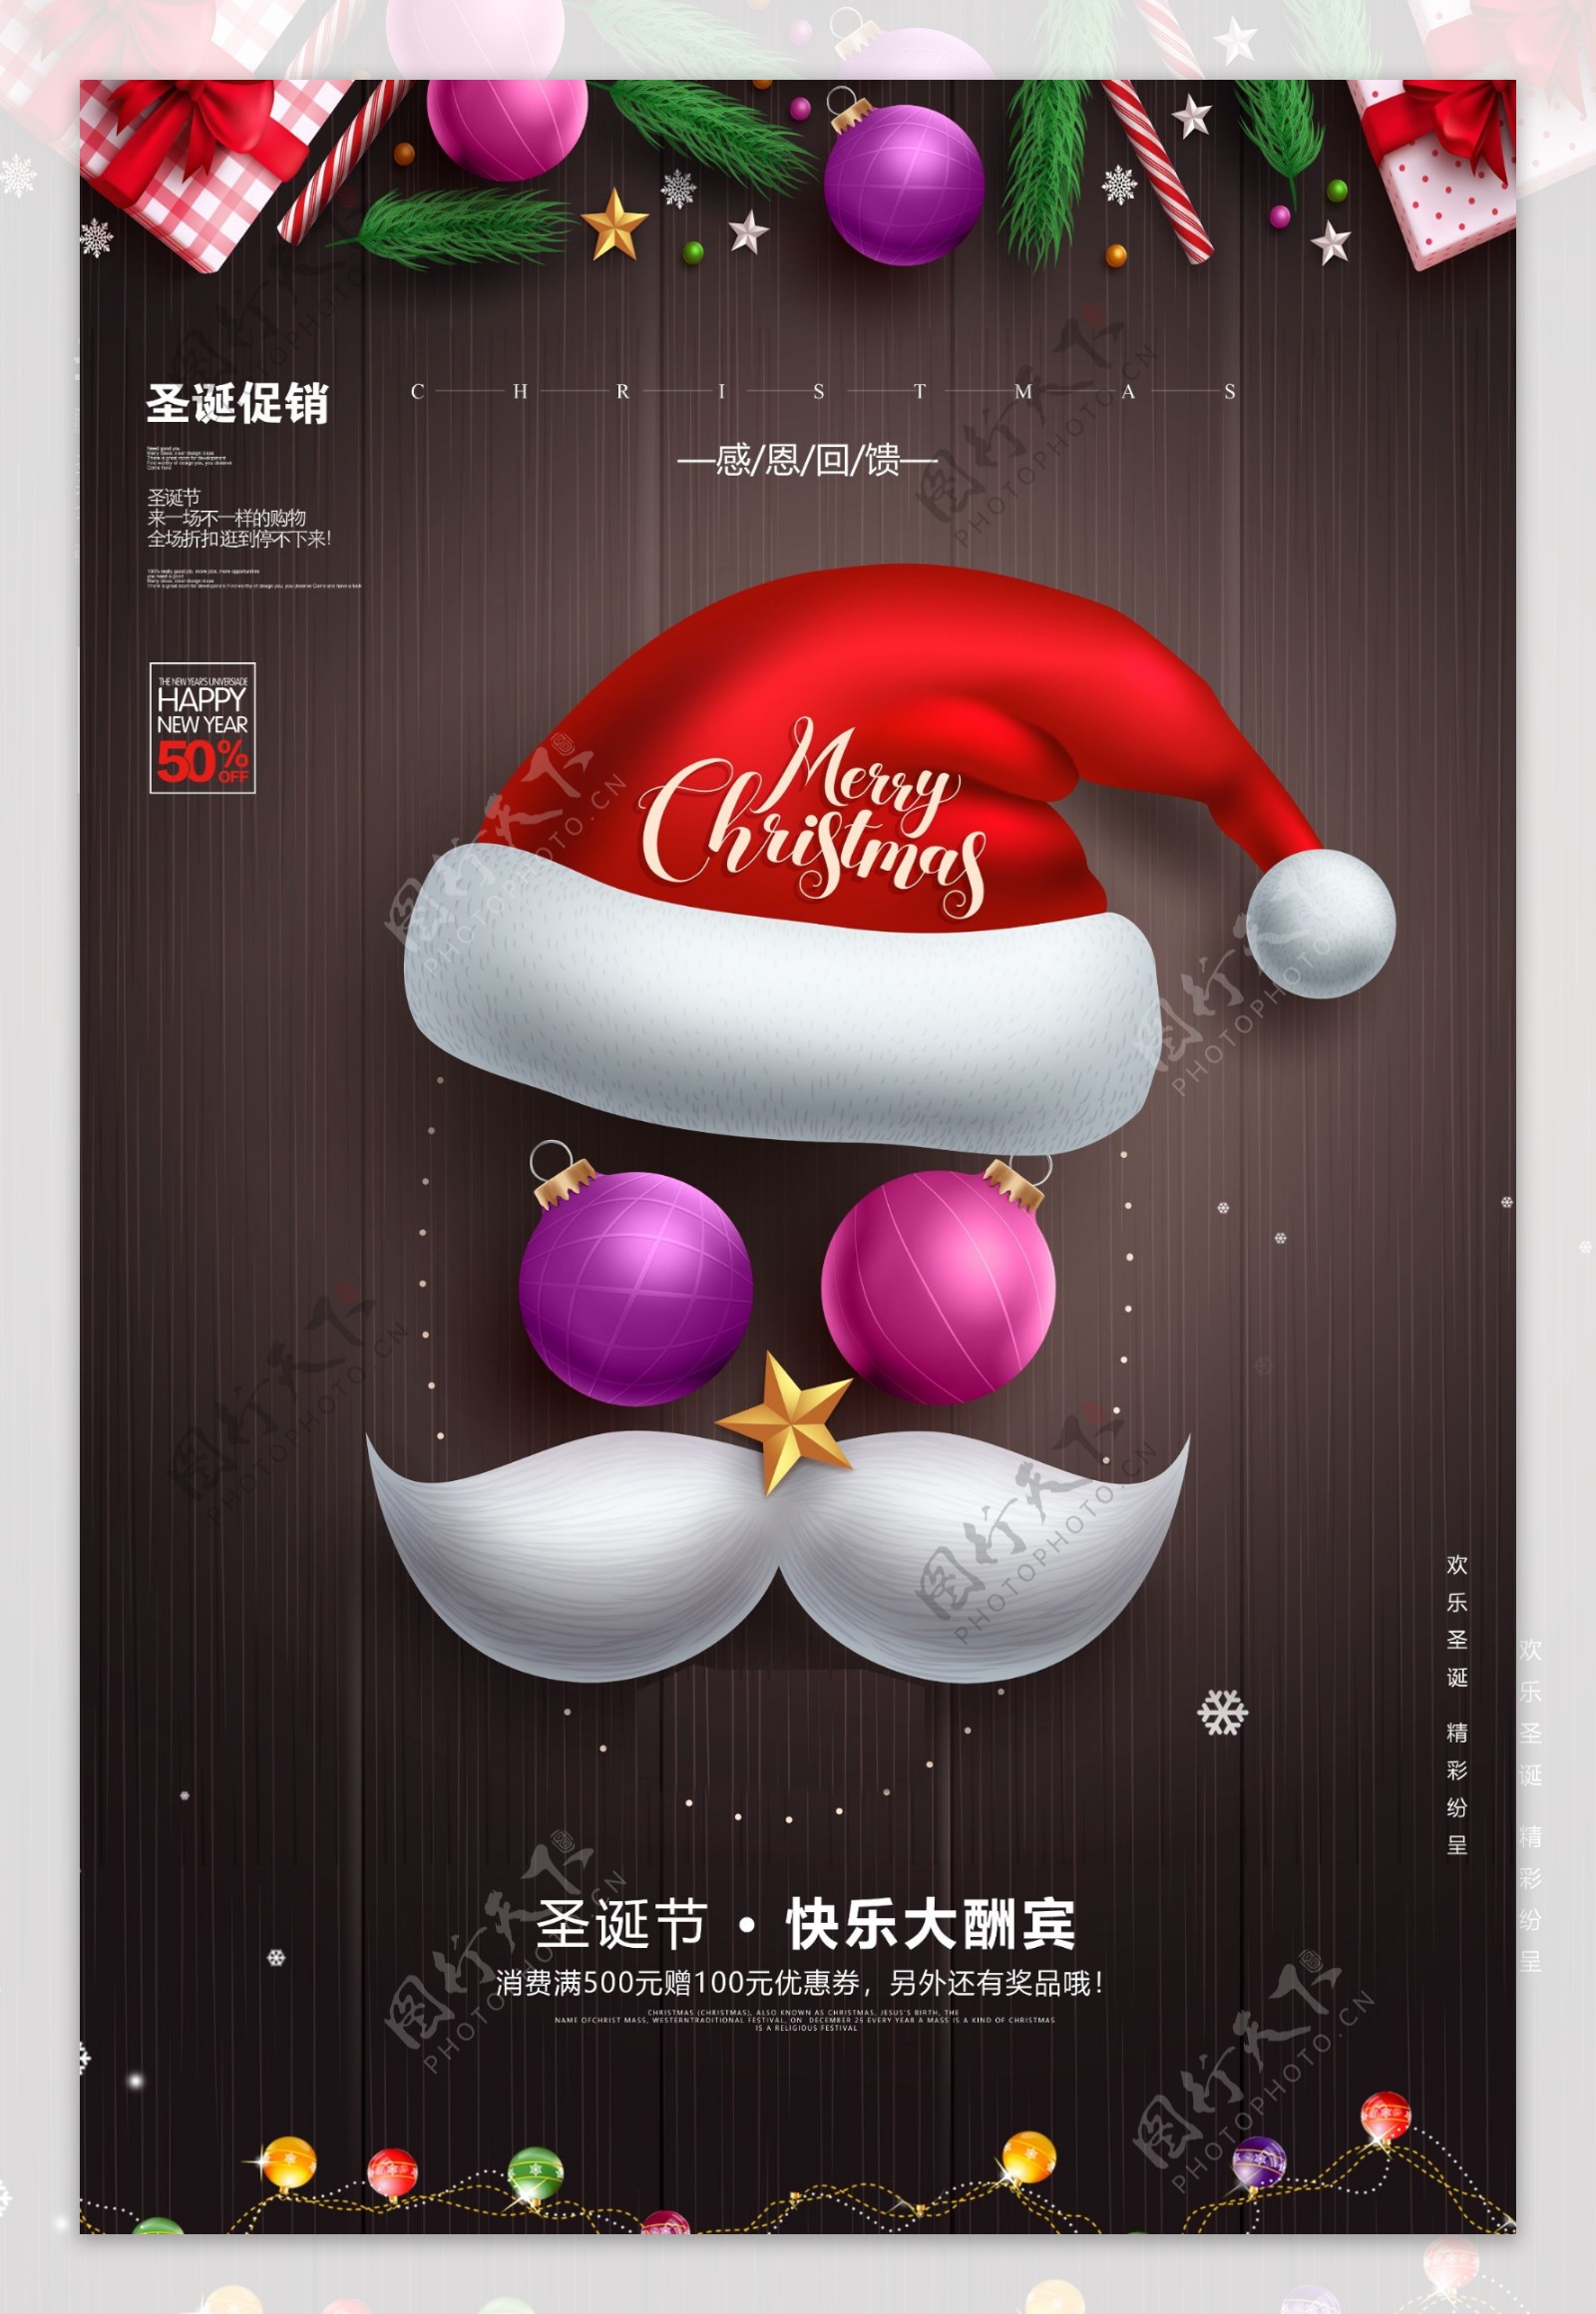 时尚圣诞节促销活动节日海报设计